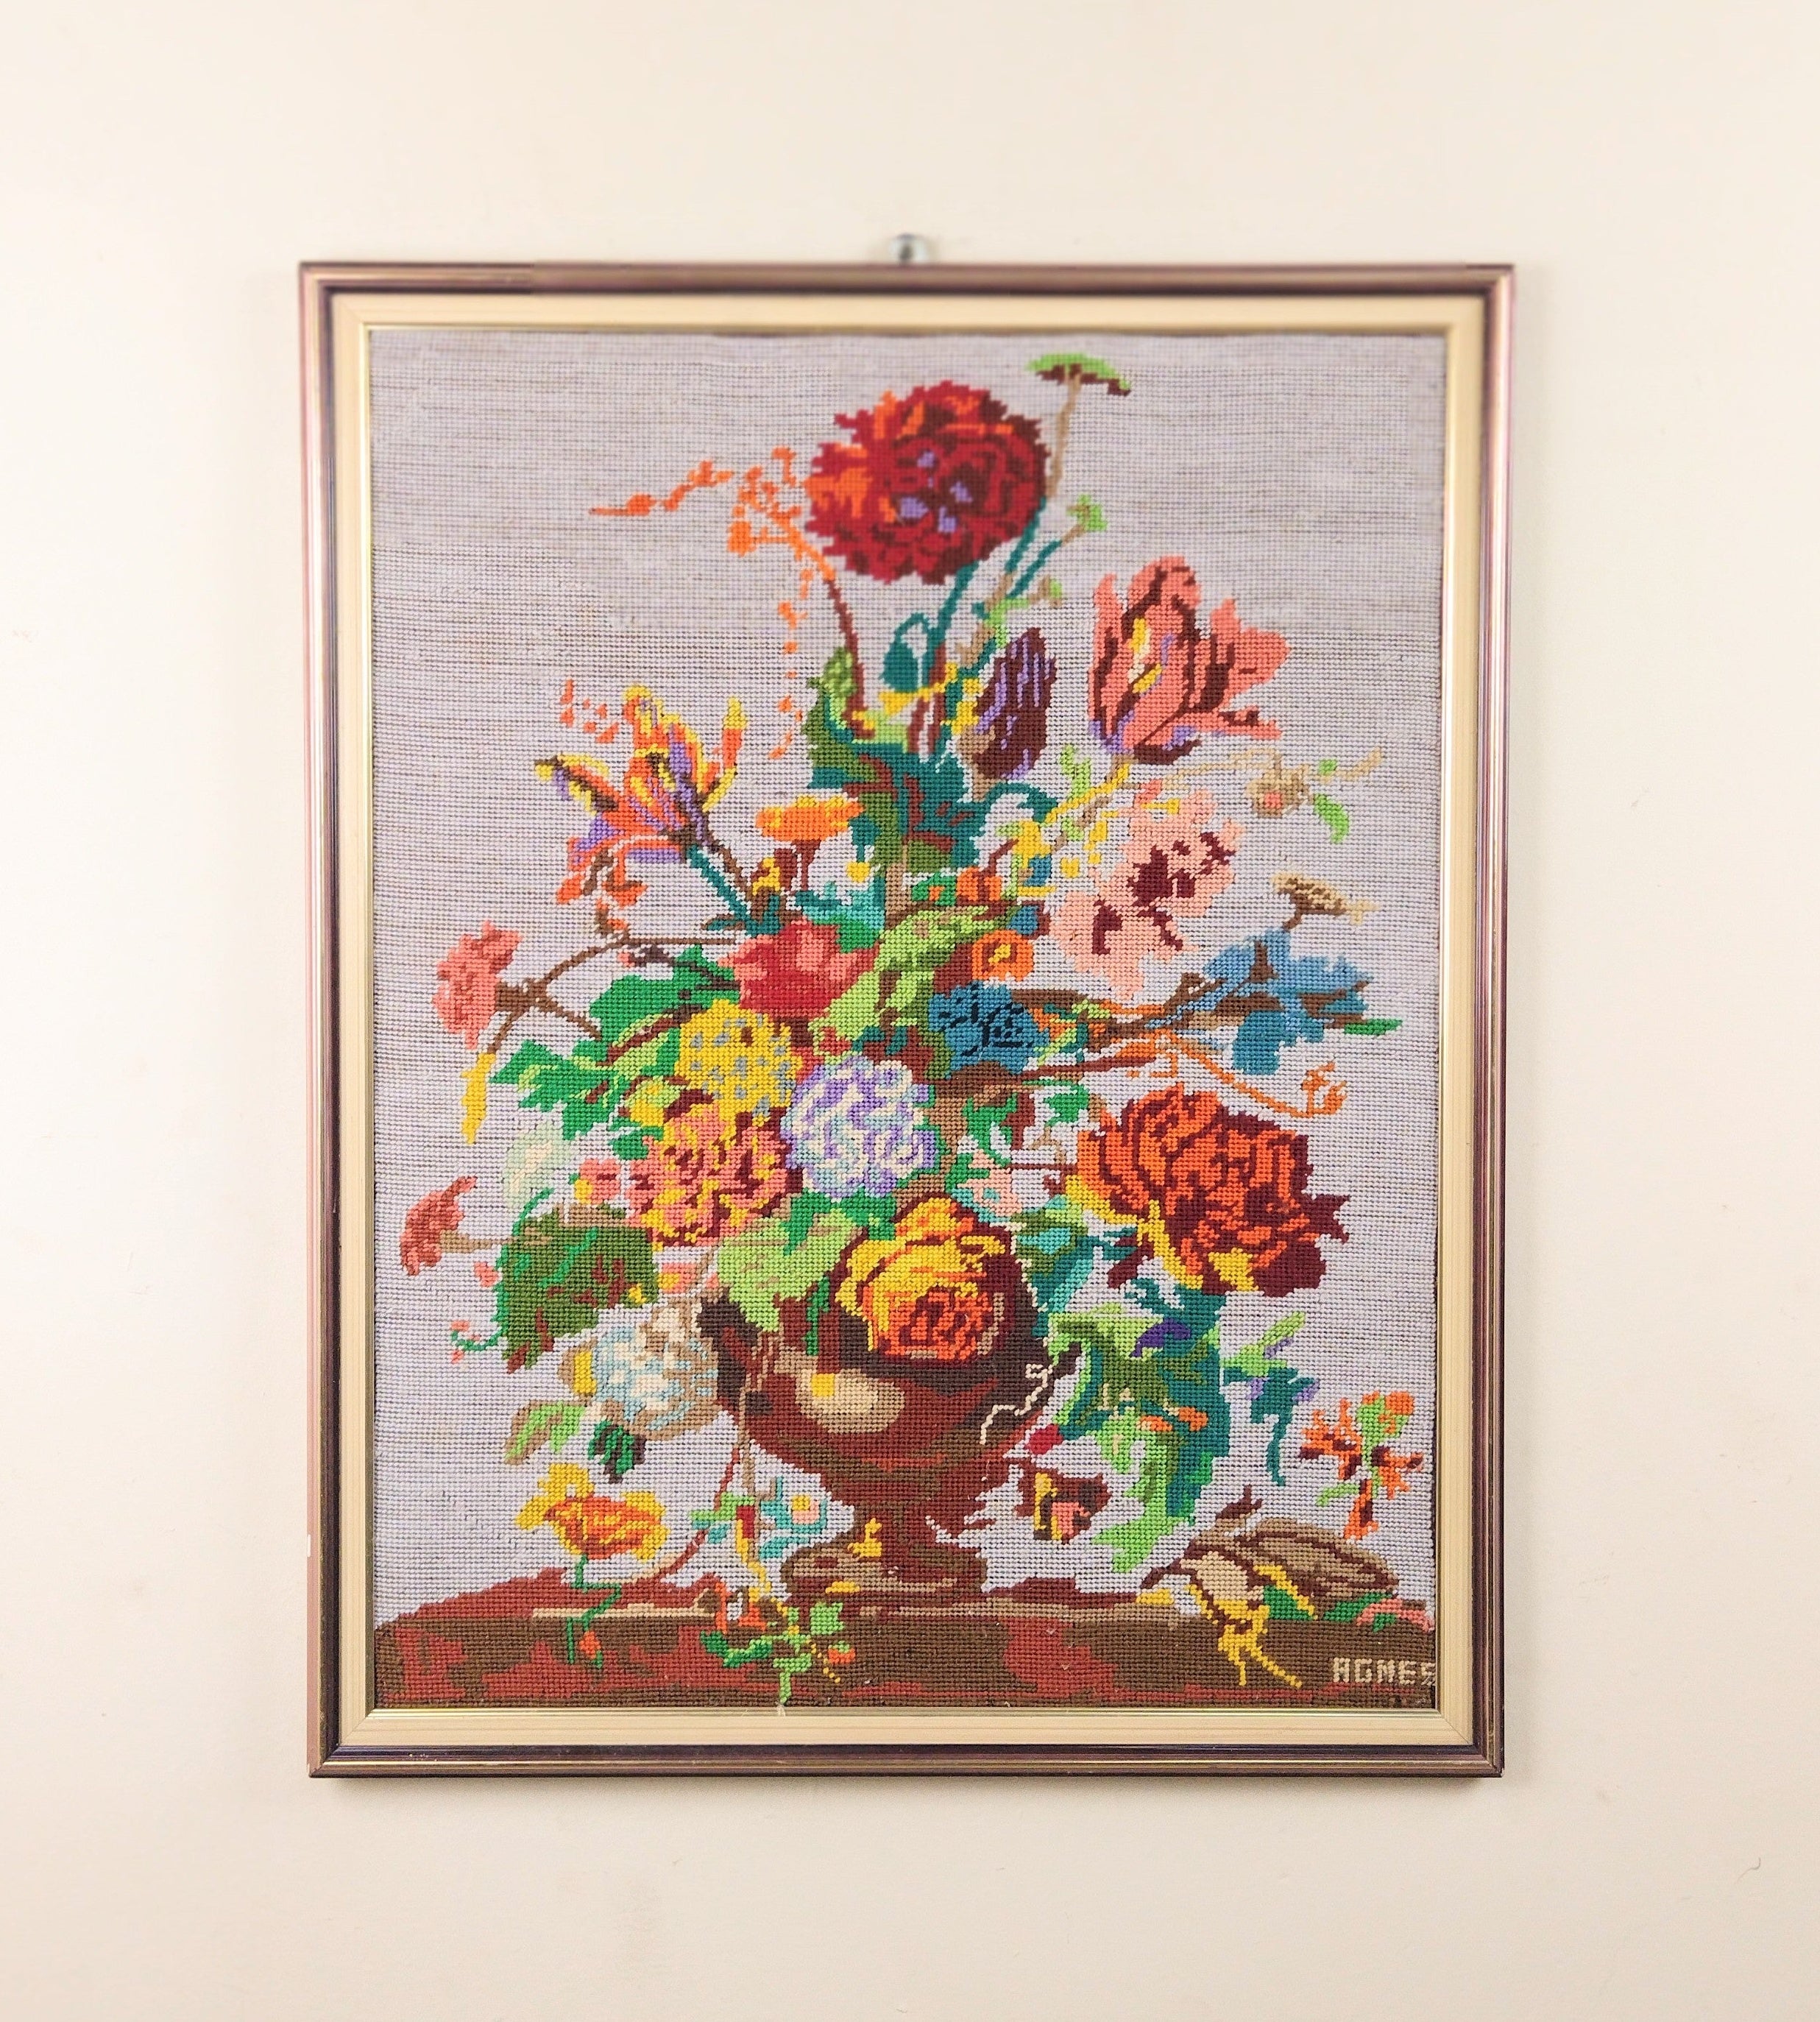 Quadro / Tapeçaria "Flores Coloridas" por Agnes (76cm X 61cm)